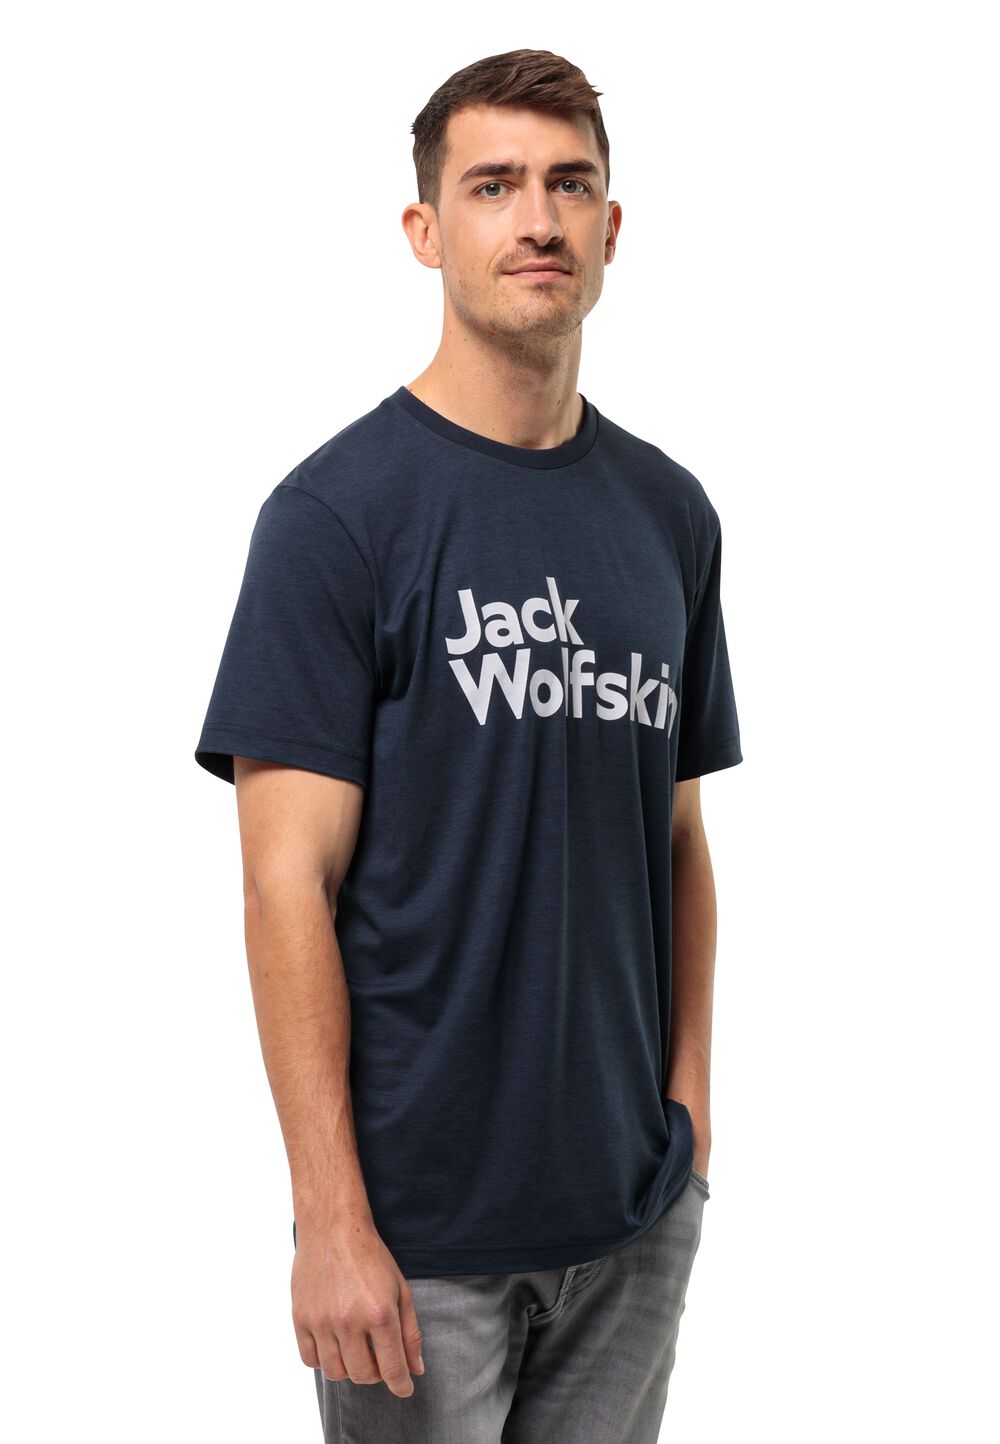 Jack Wolfskin Funktionsshirt Herren Brand T-Shirt Men L blau night blue von Jack Wolfskin